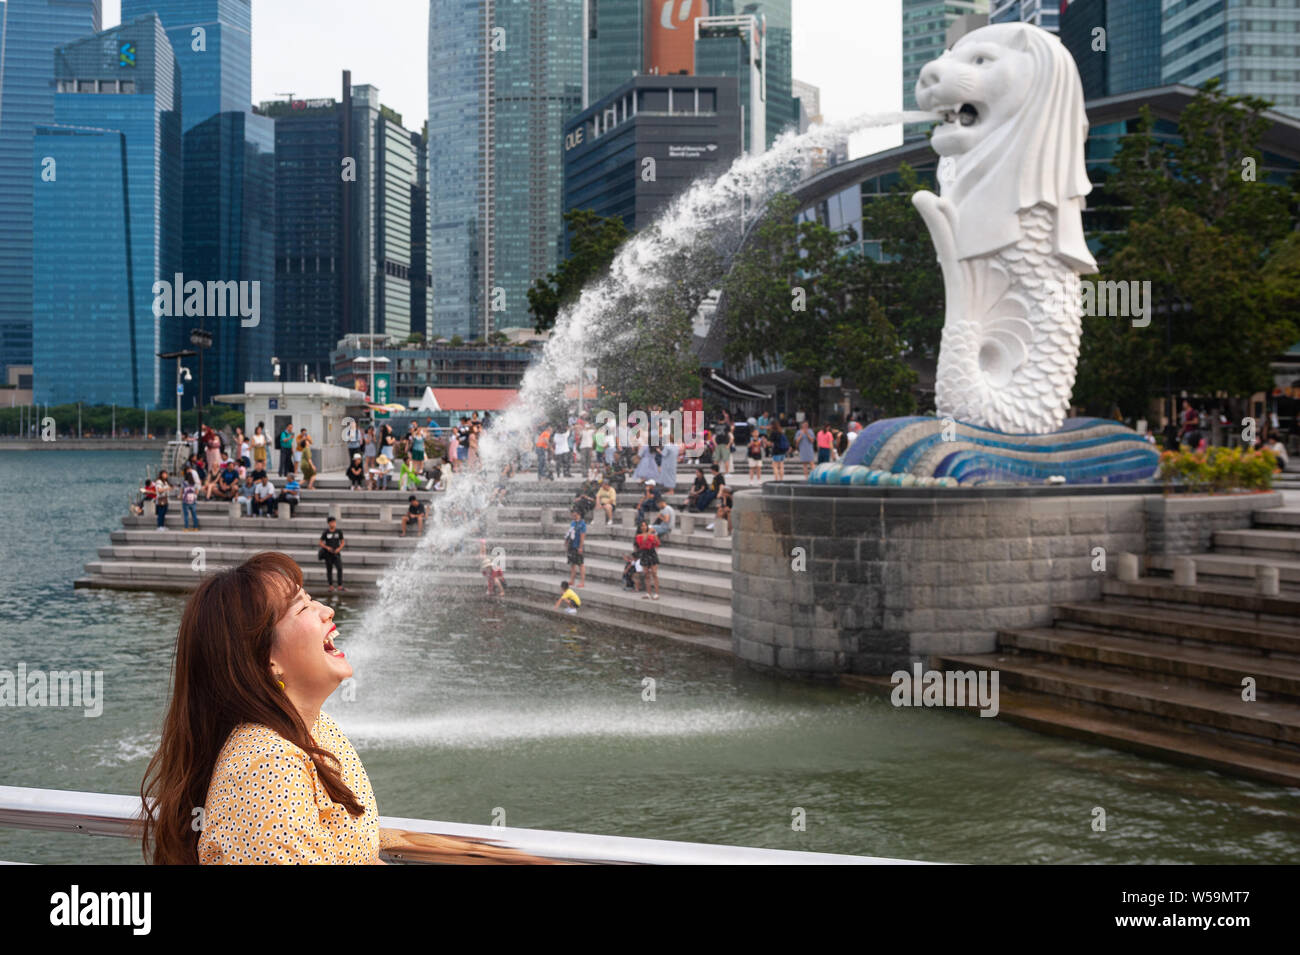 25.07.2019, Singapur, Republik Singapur, Asien - eine weibliche touristische Posen für Fotos im Merlion Park entlang dem Singapore River. Stockfoto